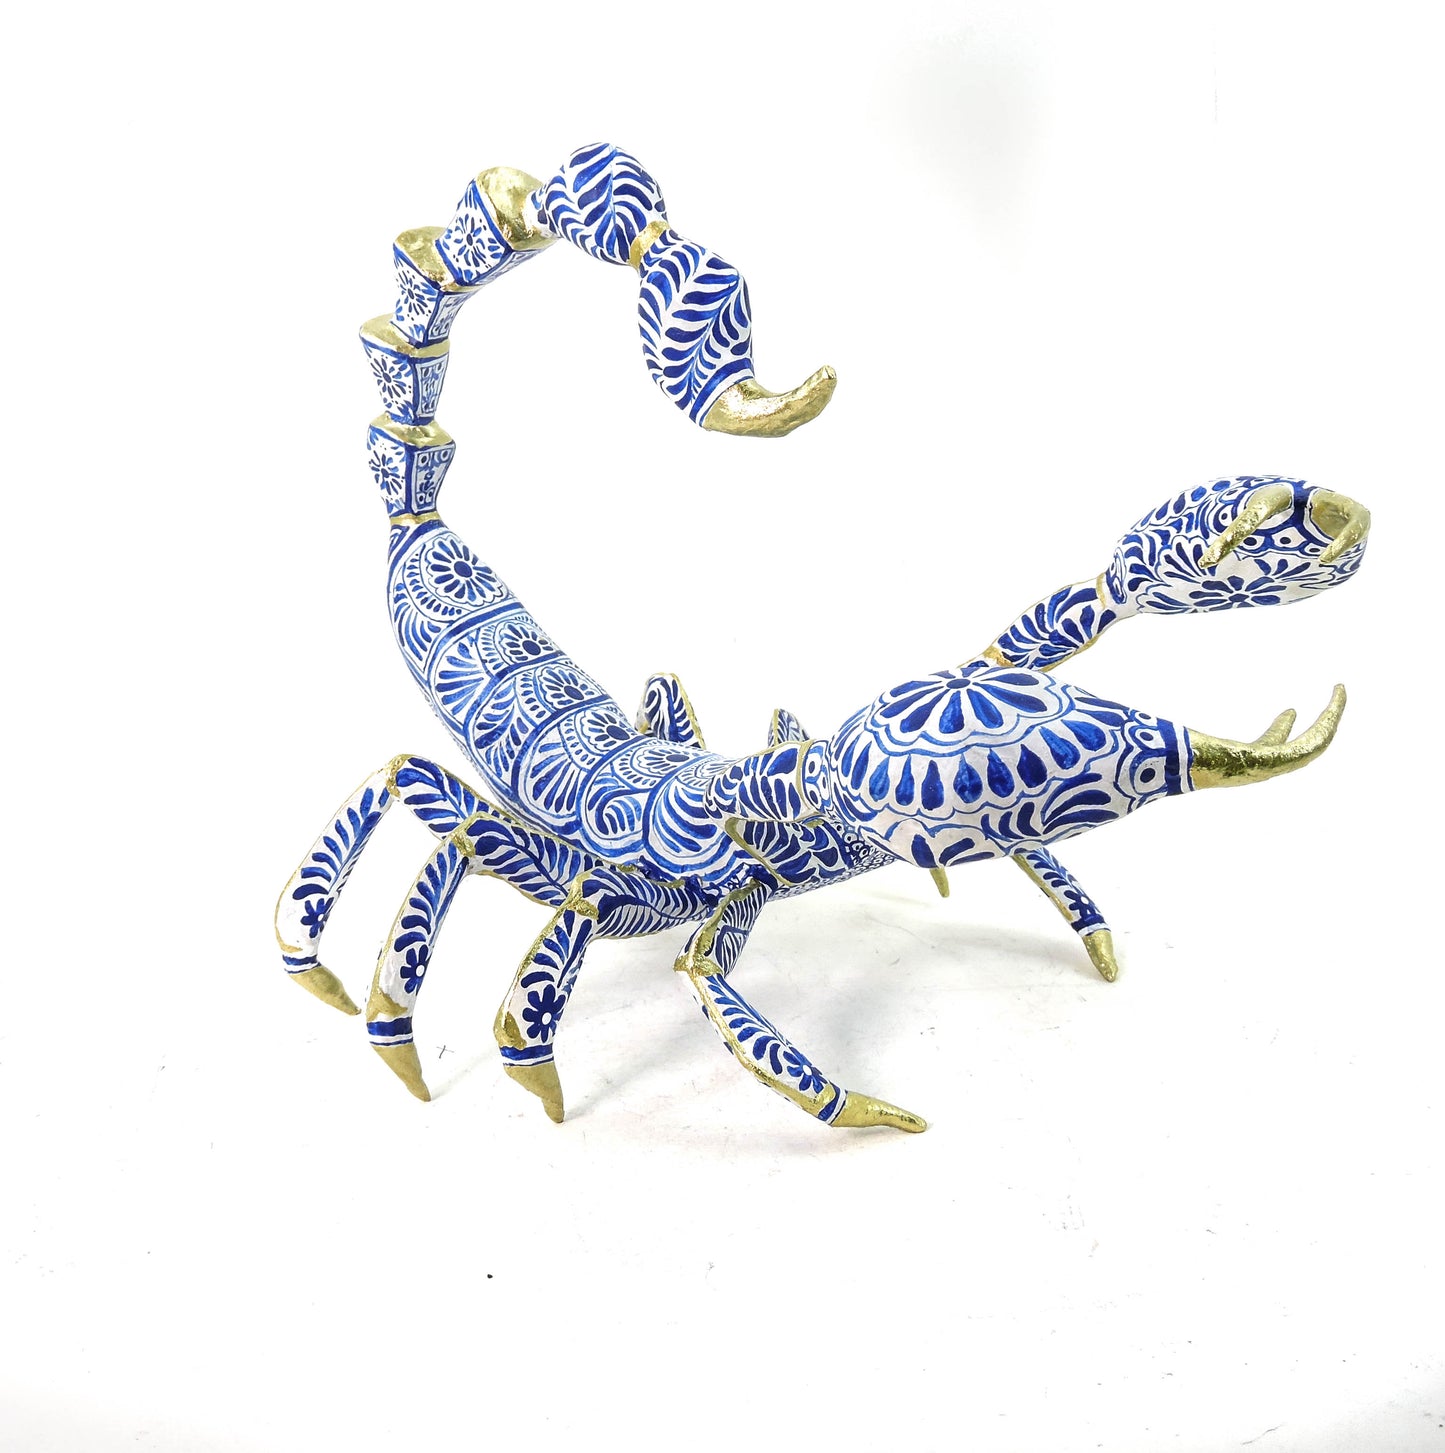 Escorpion ceramica I